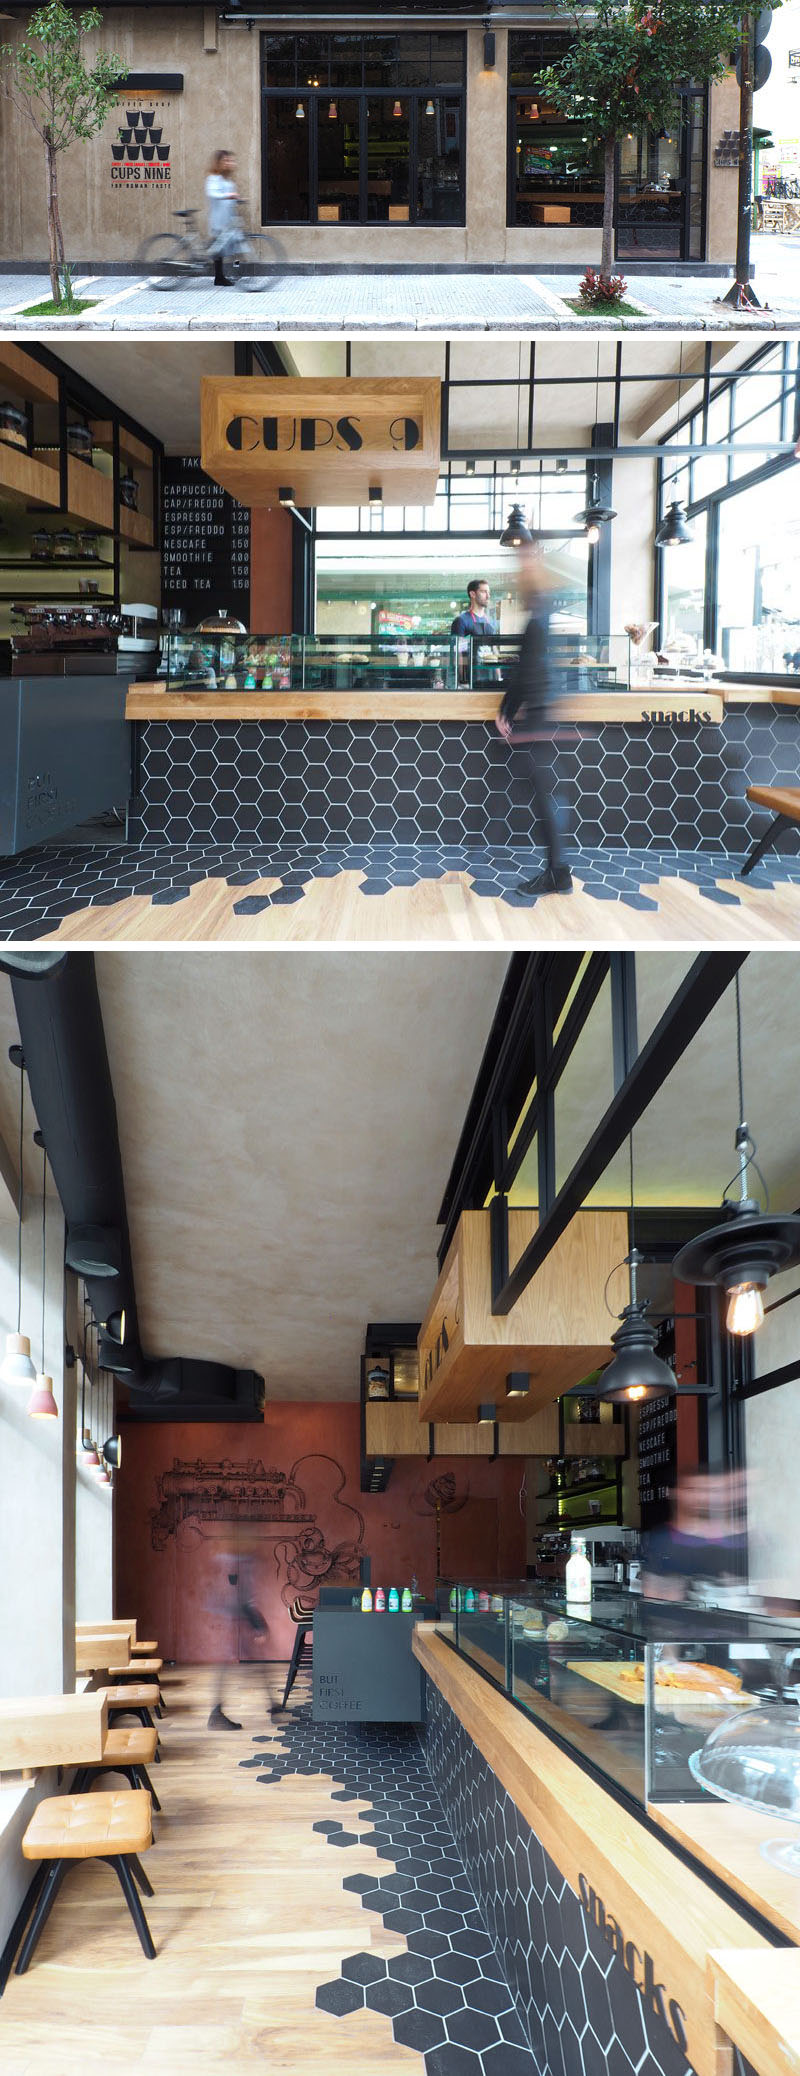 Это современное кафе имеет уникальный переход от шестиугольника к дереву, что побуждает людей использовать как внутренние, так и открытые пространства кафе.